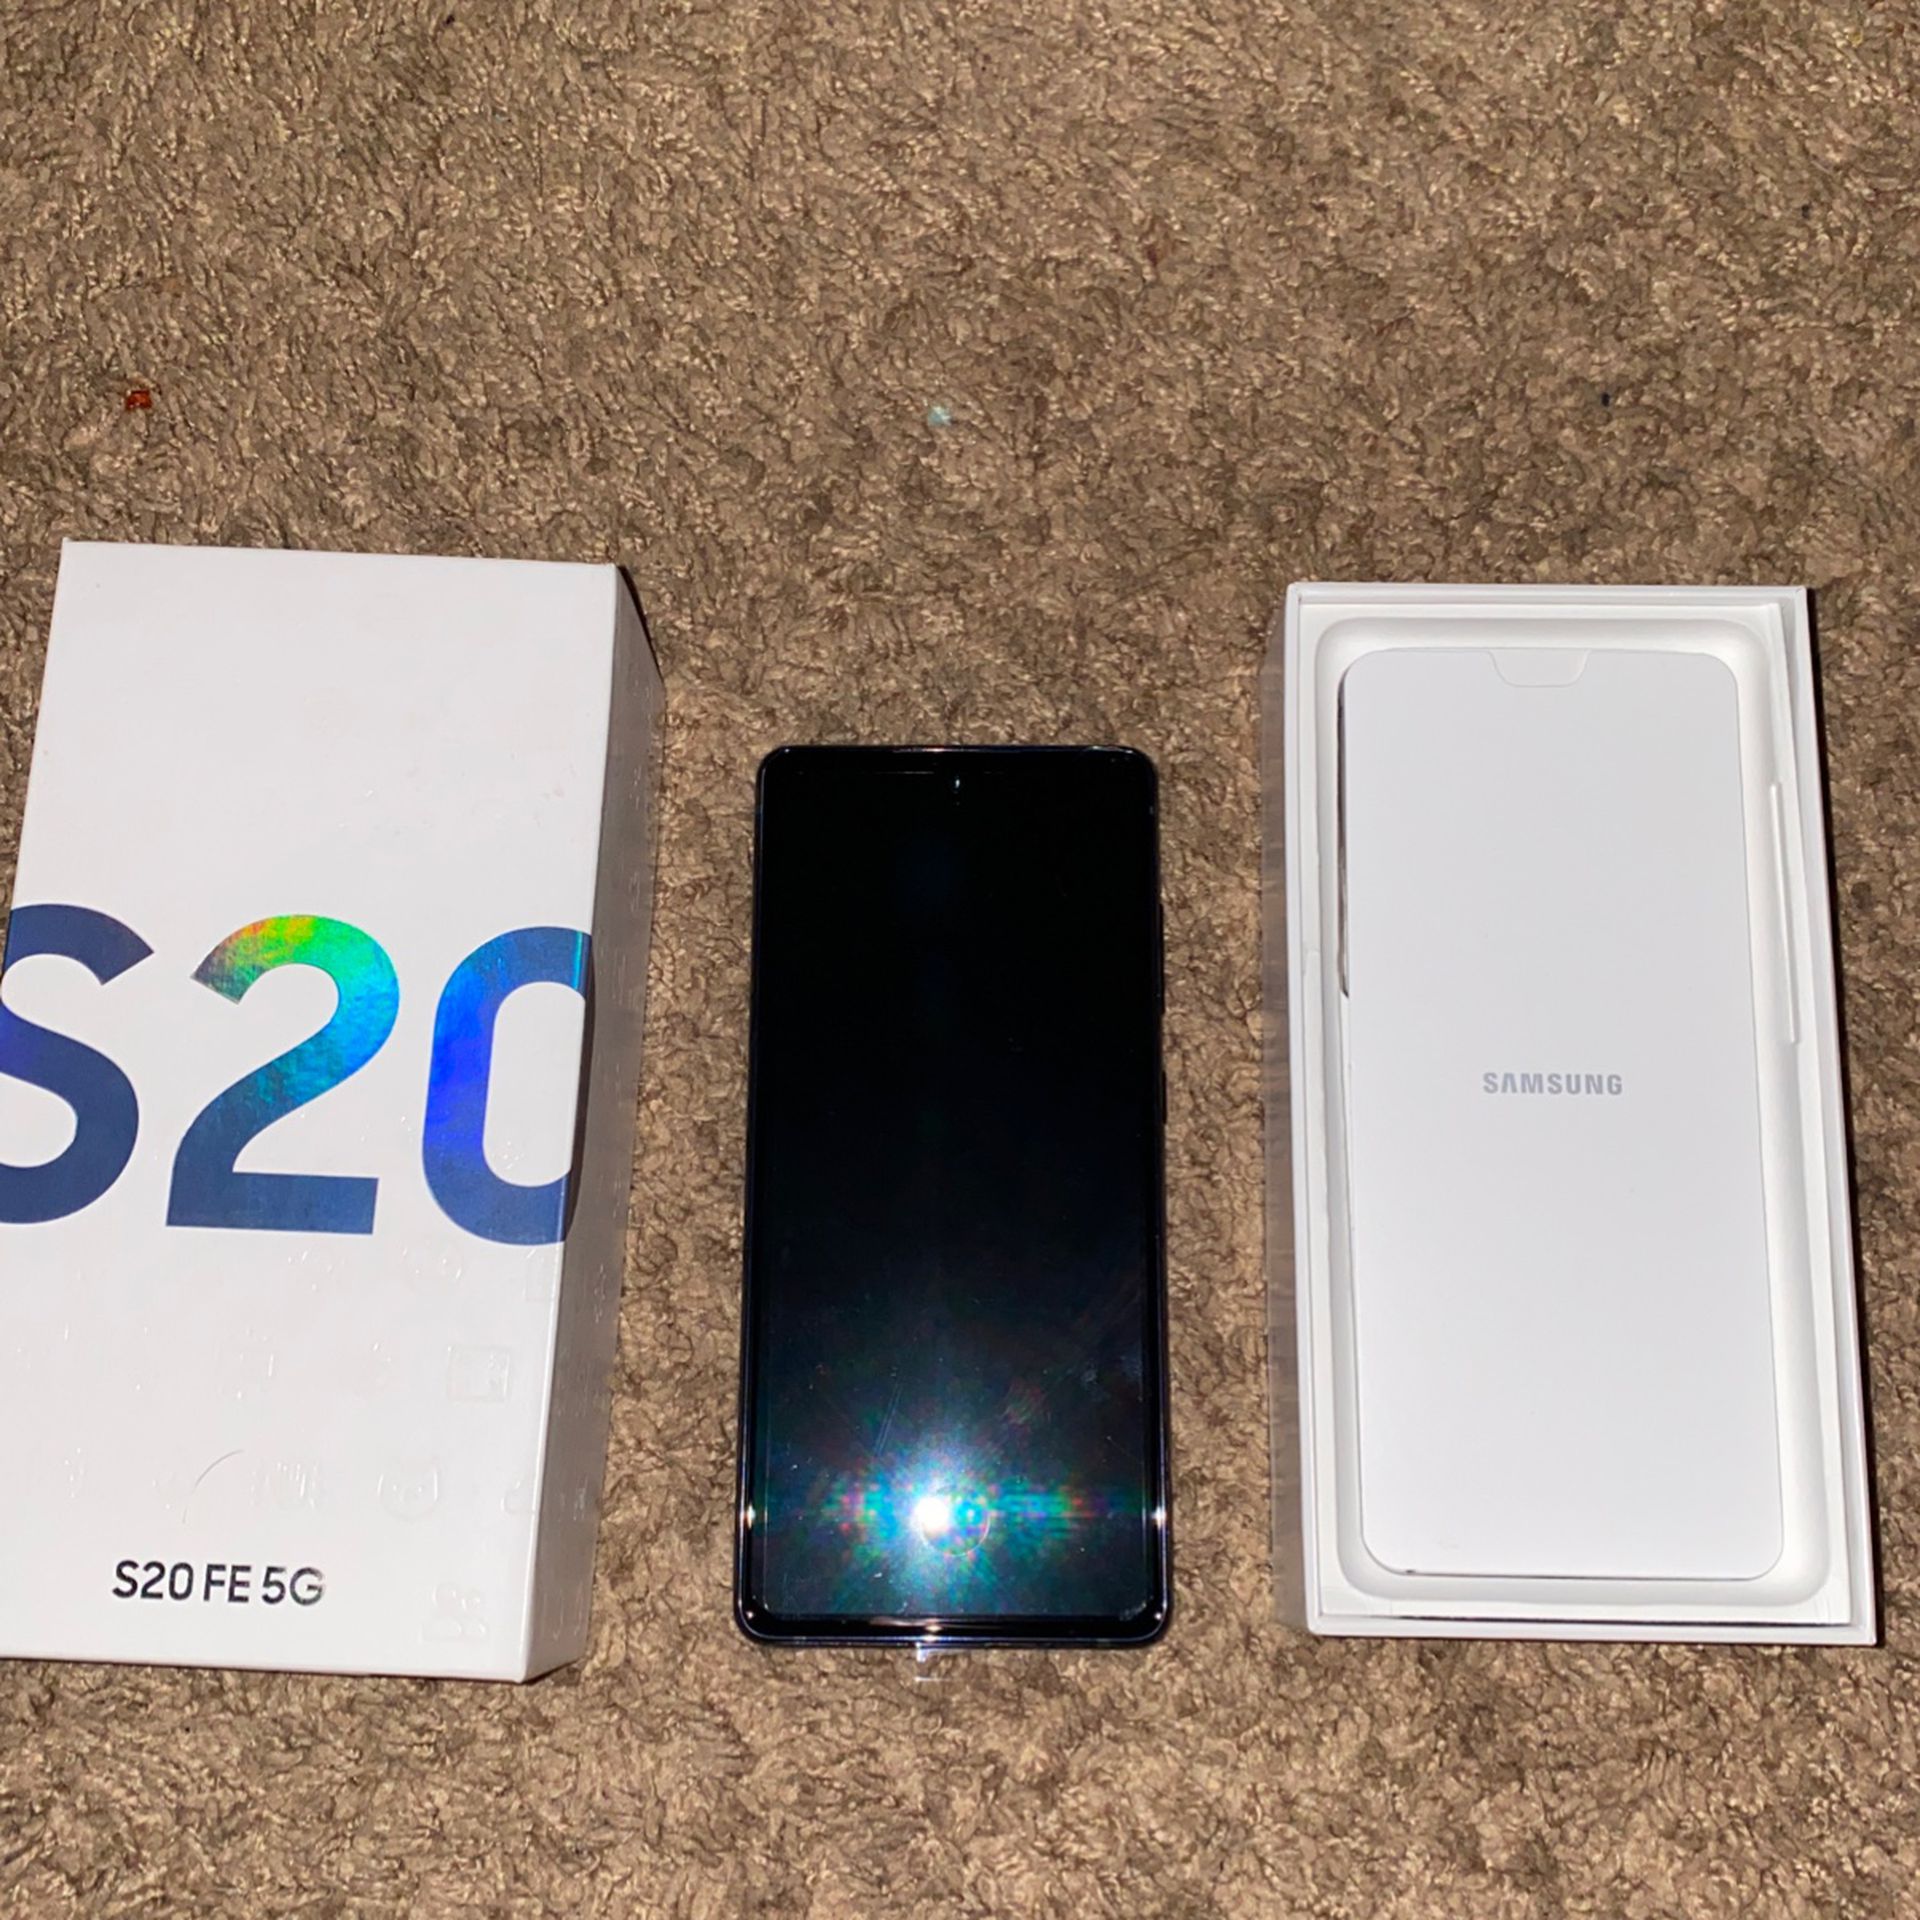 Samsung Galaxy S20 5g cheap